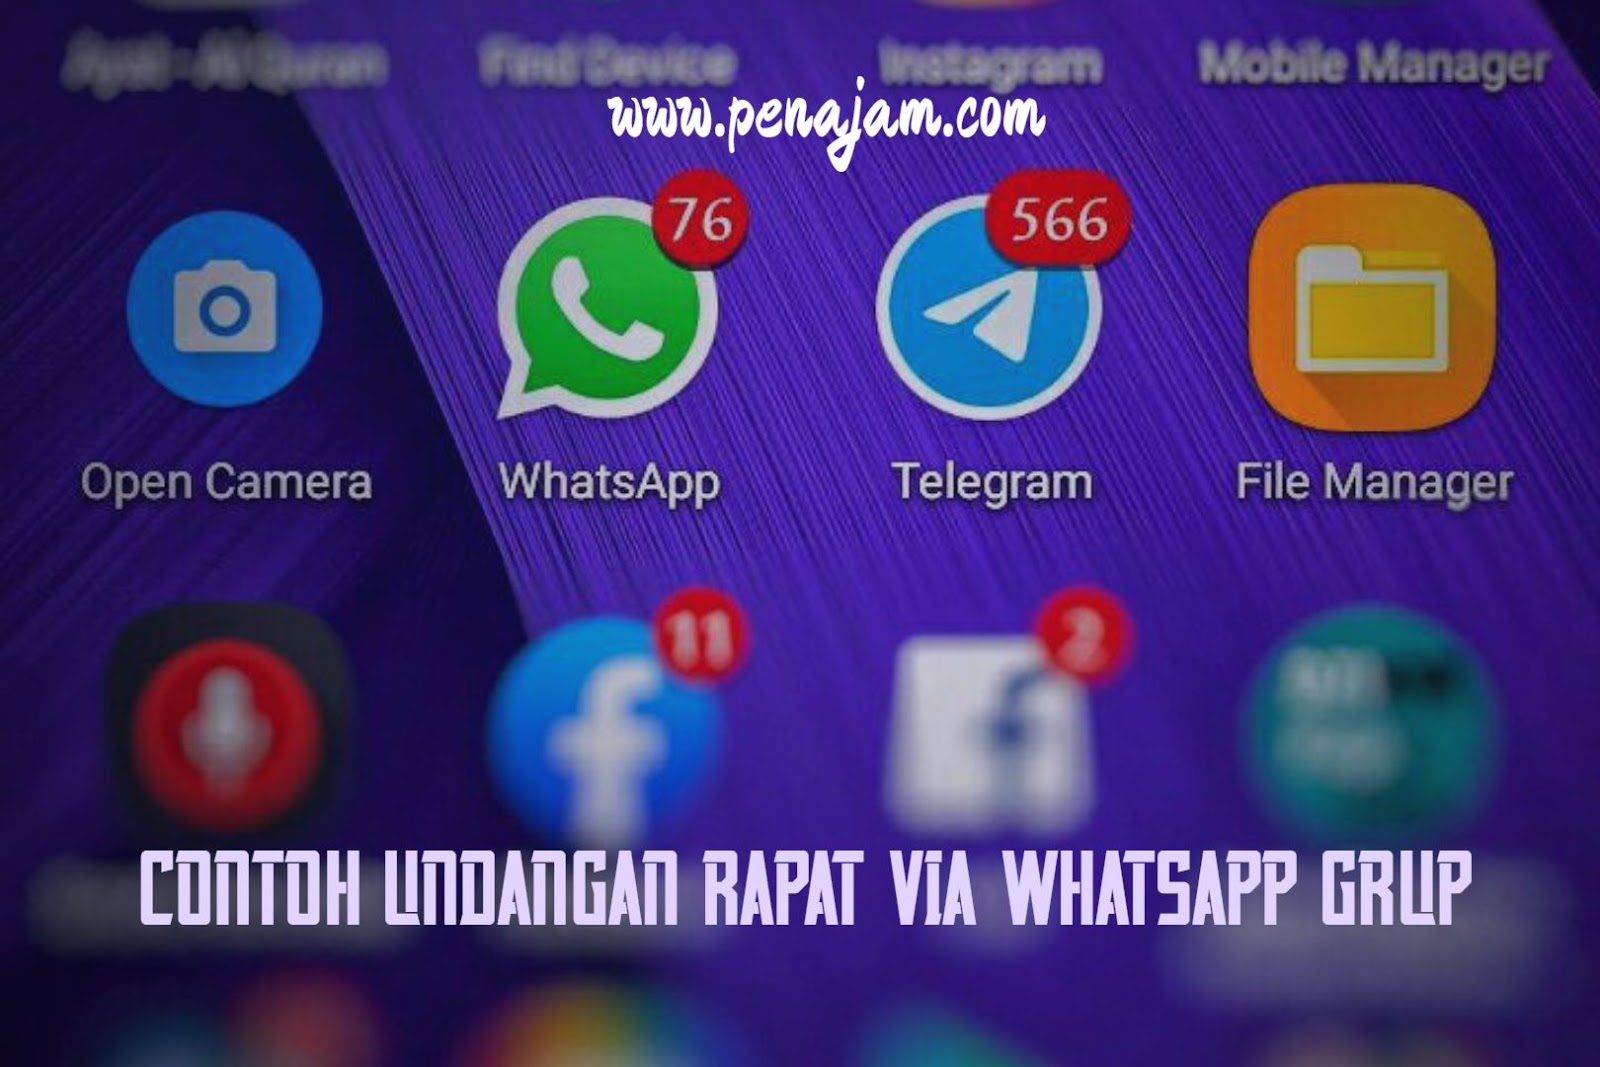 Contoh Undangan Rapat Via Whatsapp Grup Terbaru